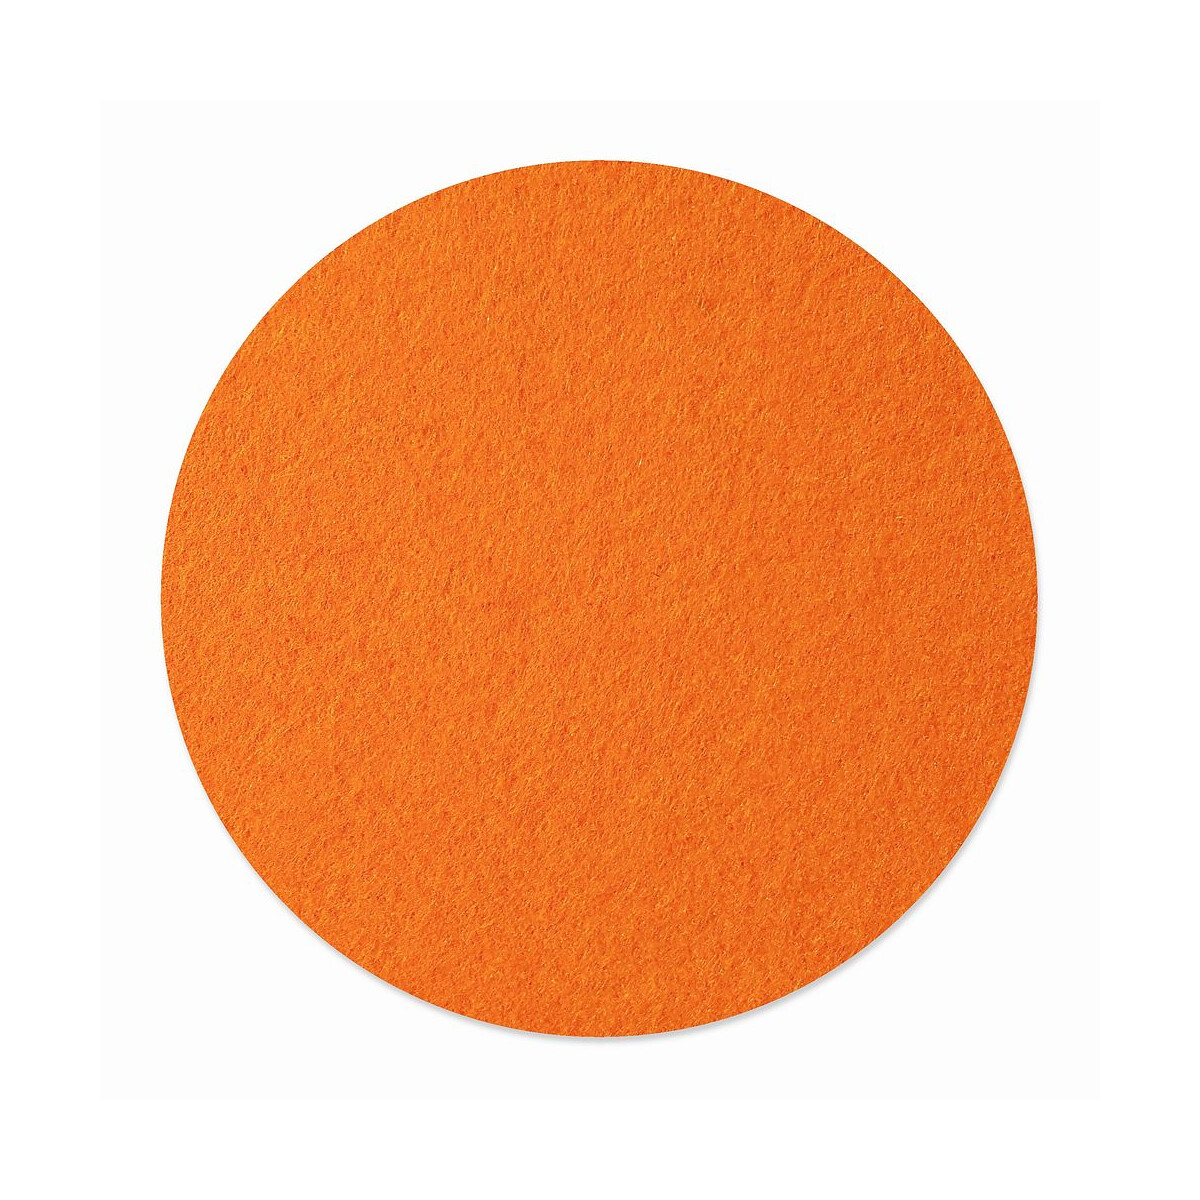 1 x FILZ Untersetzer Rund 11 cm - orange